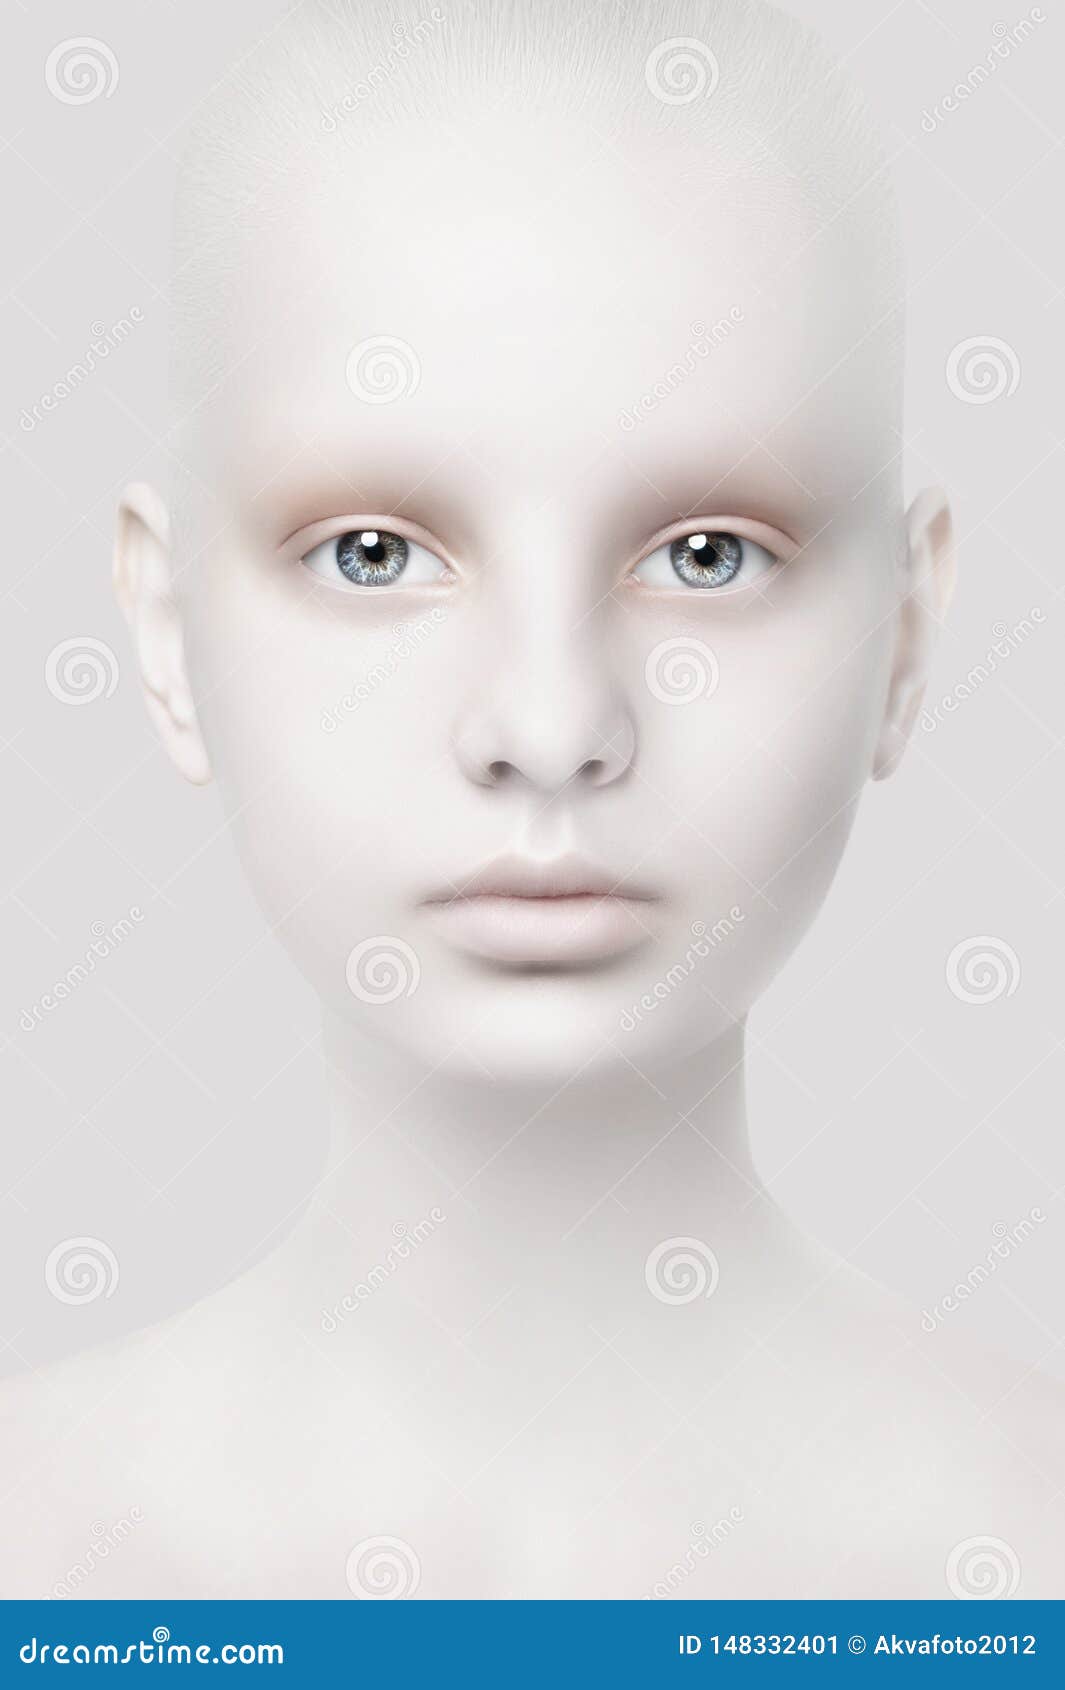 genoeg gek geworden Wees tevreden Ongebruikelijk Portret Van Een Jong Meisje Fantastische Verschijning Witte  Huid Hoofdclose-up Stock Afbeelding - Image of verschijning, vreemd:  148332401